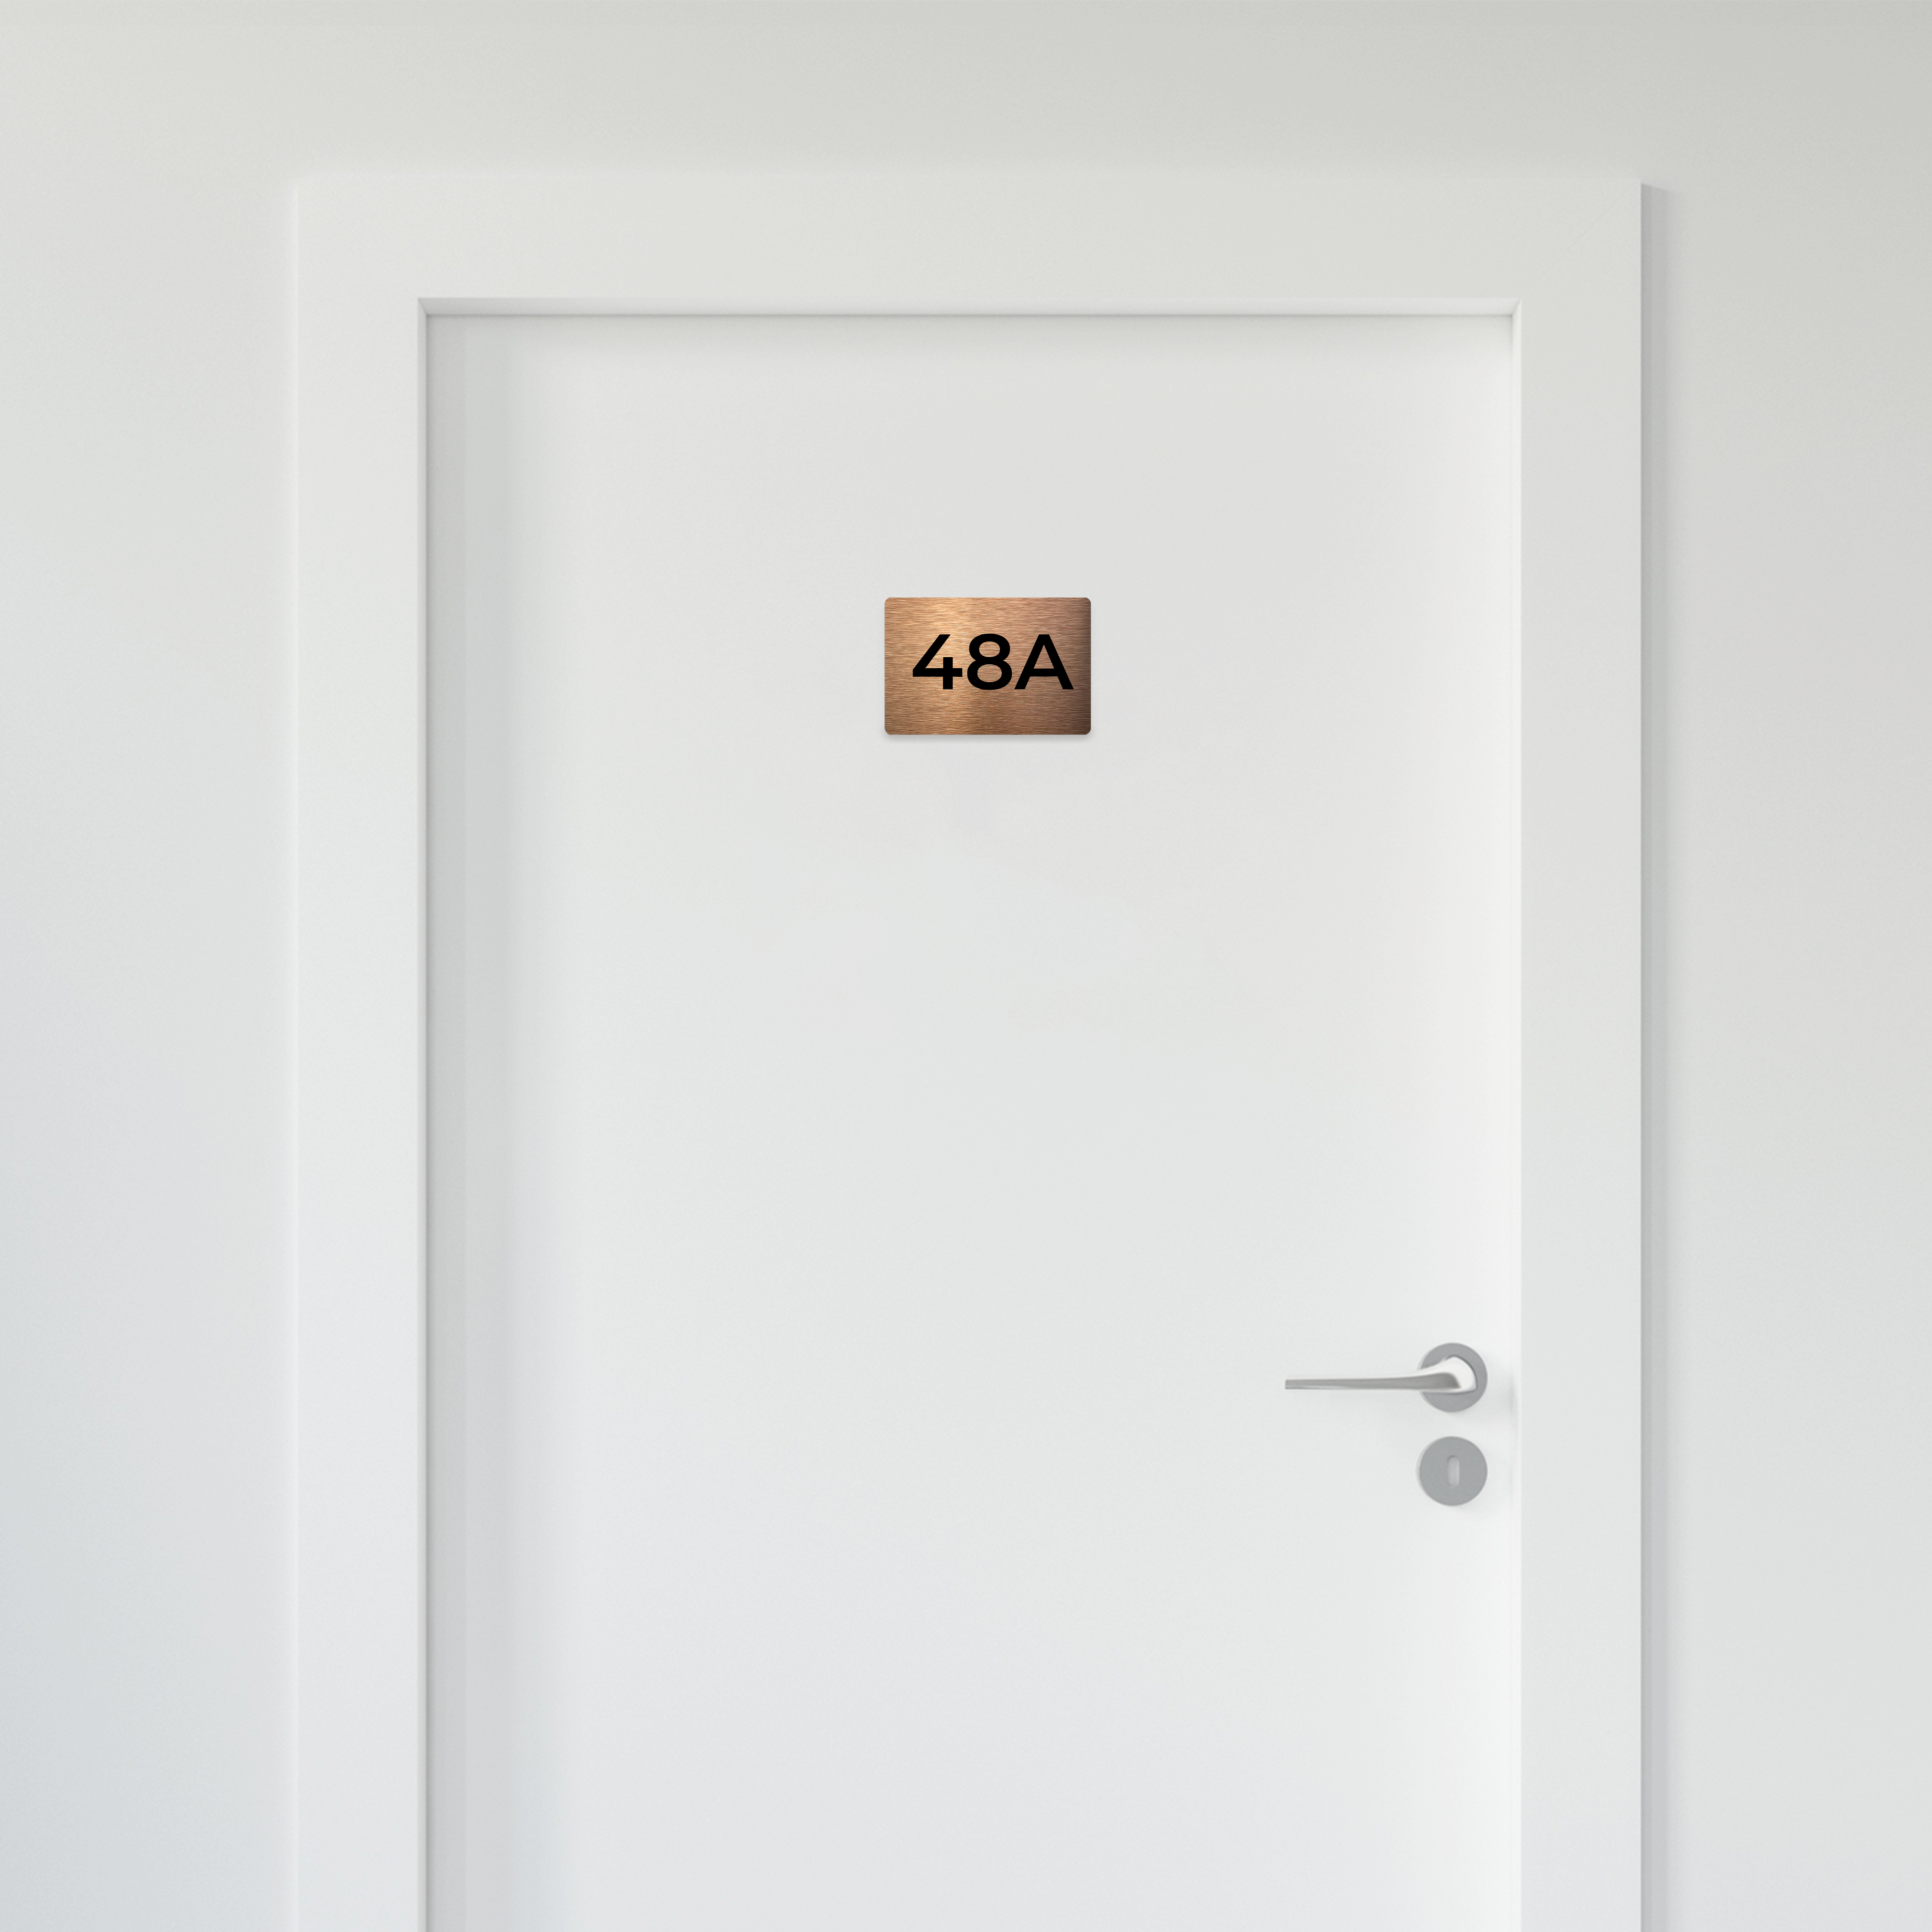 BRONZE ROOM NUMBERS FOR DOORS - ALUMADESIGNCO Door Signs - Custom Door Signs For Business & Office